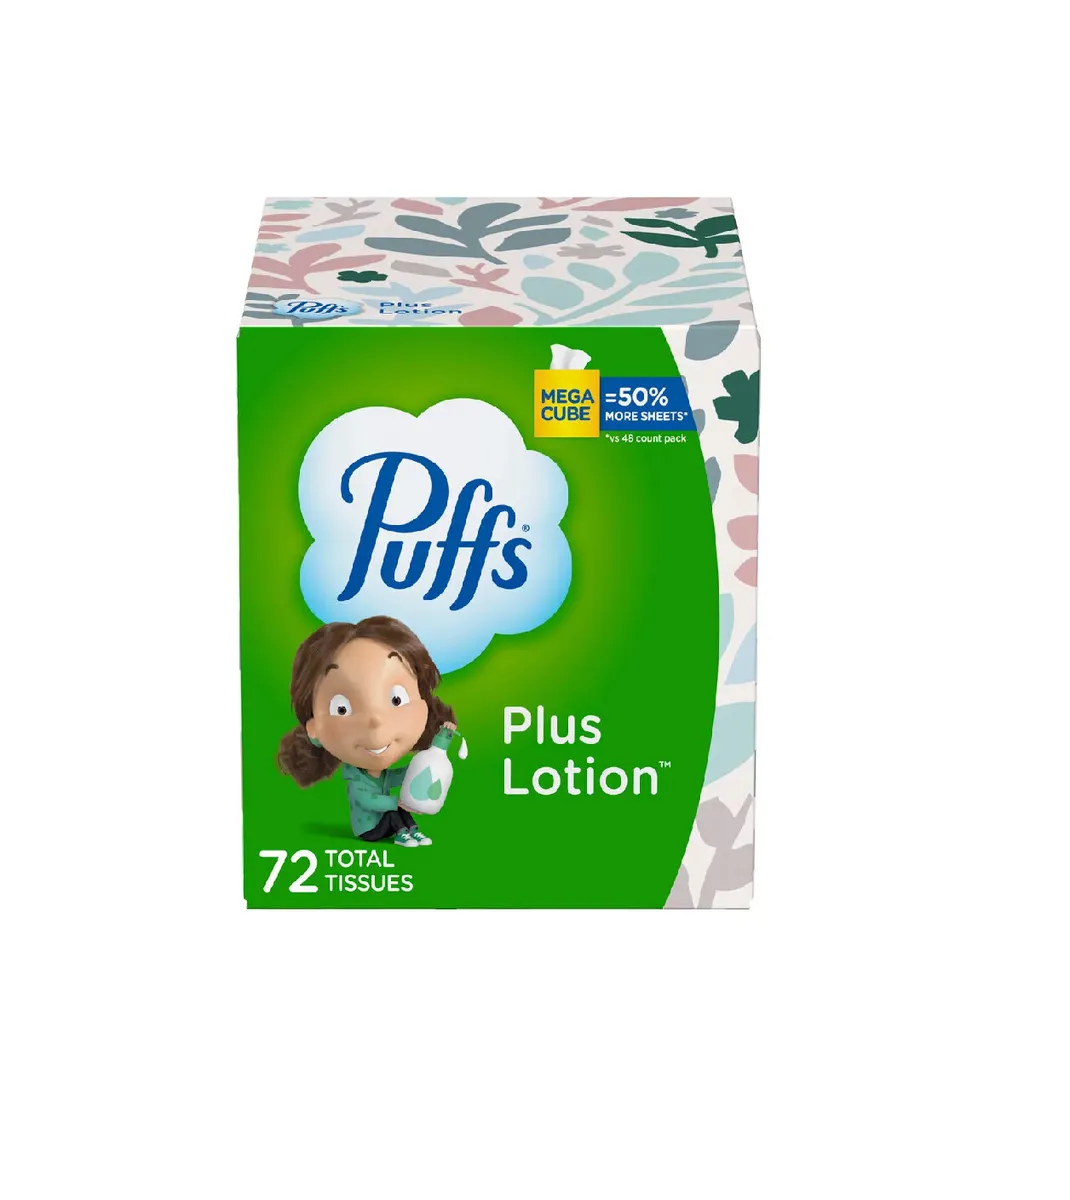 Puffs Plus Lotion Facial Tissues 3 Pk., Facial Tissue, Household